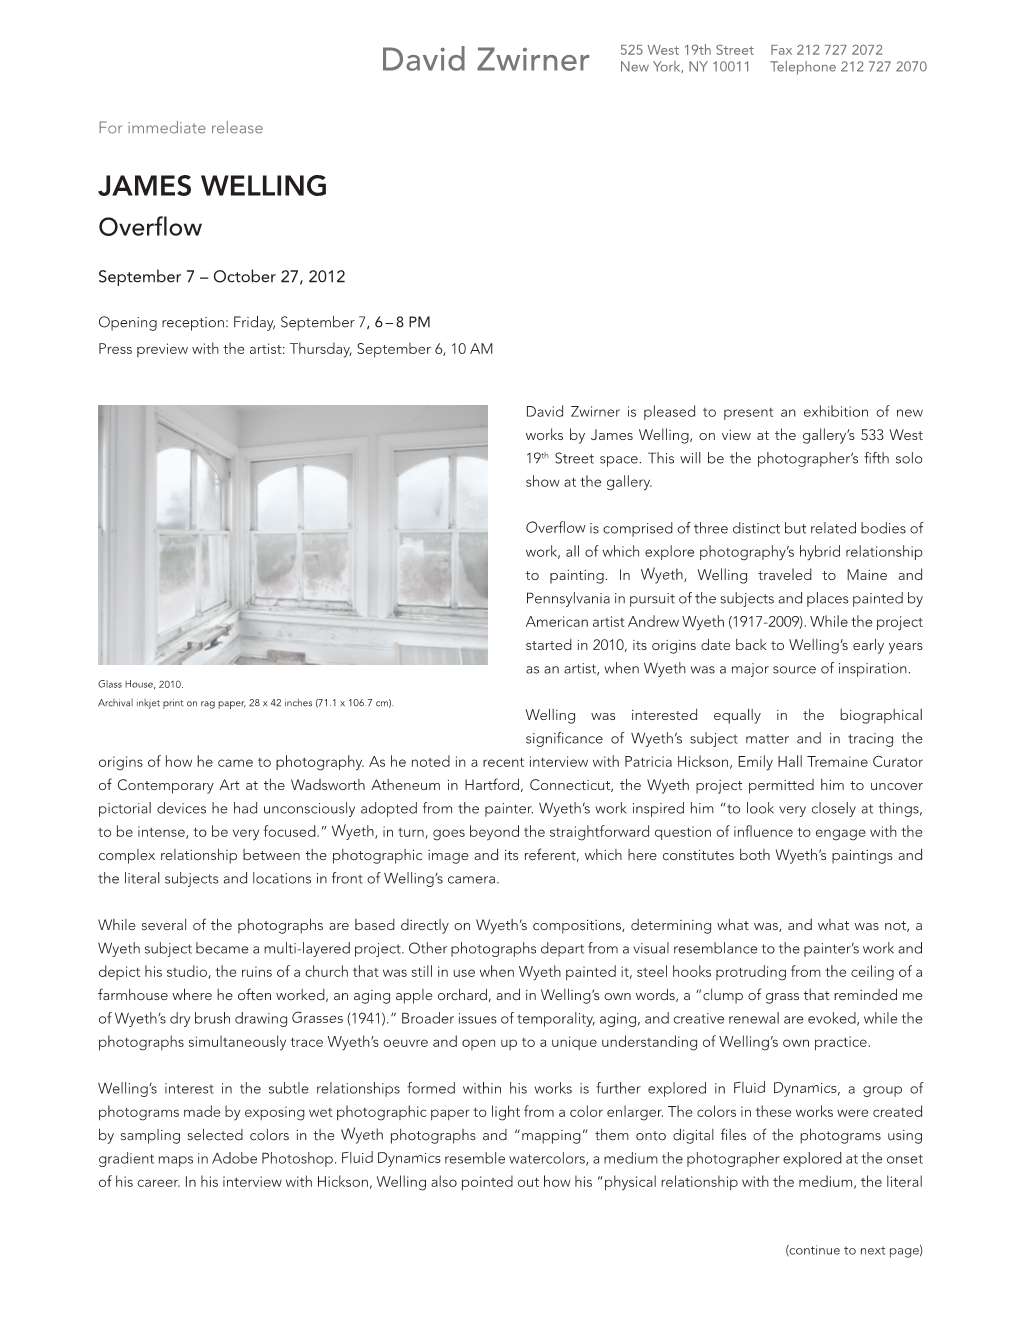 James Welling Overflow